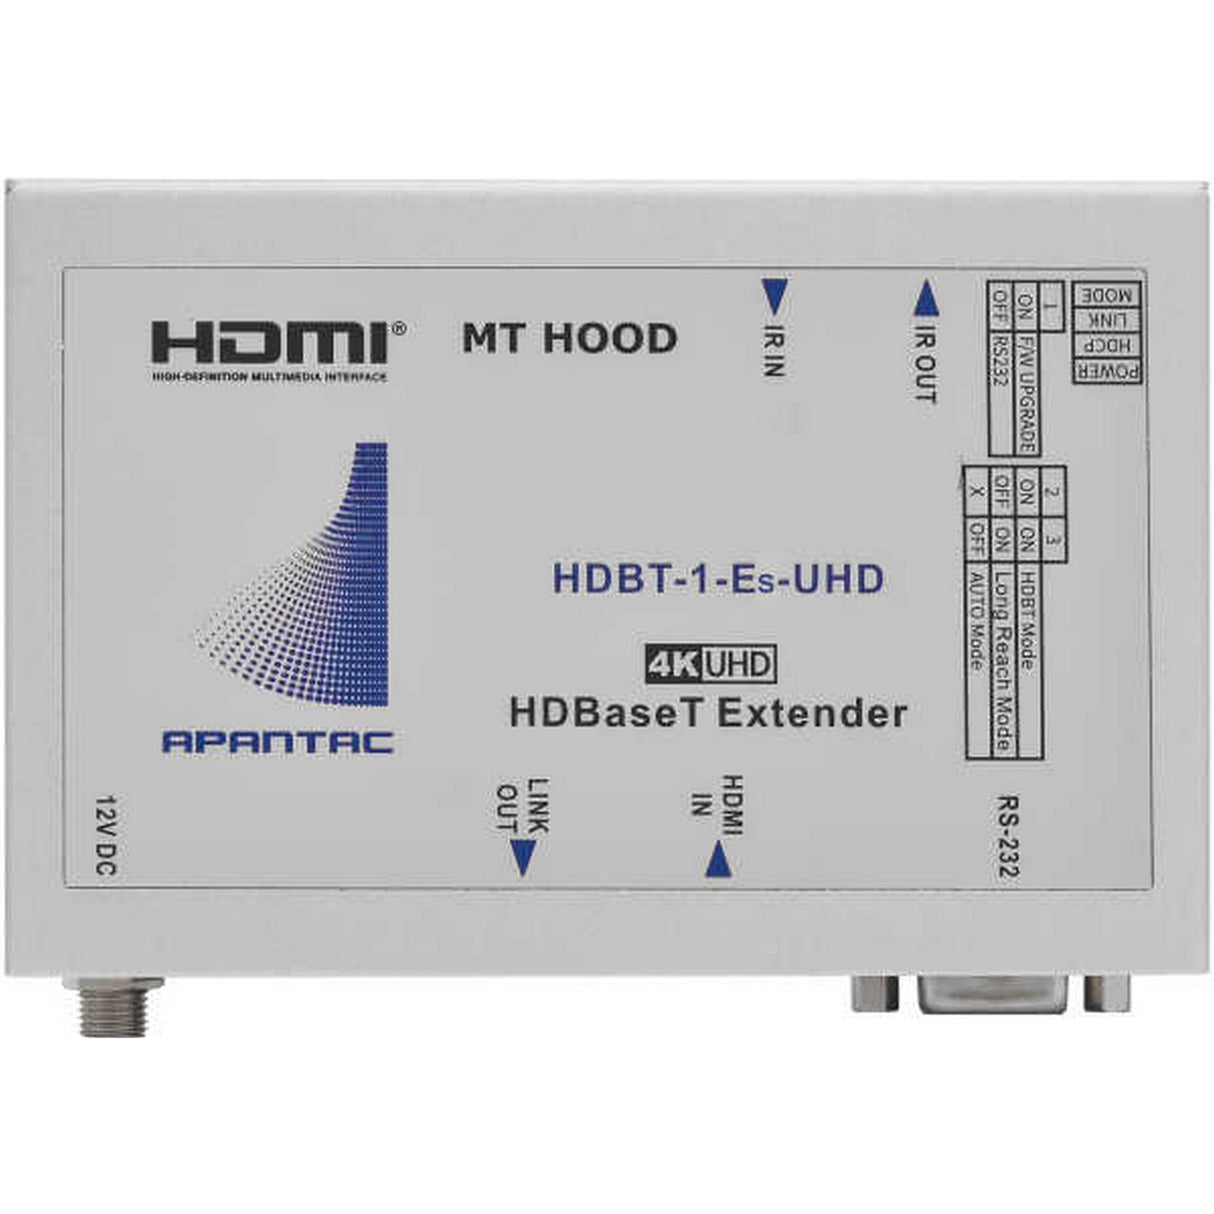 Apantac HDBT-1-Es-UHD HDMI Extender over CAT6